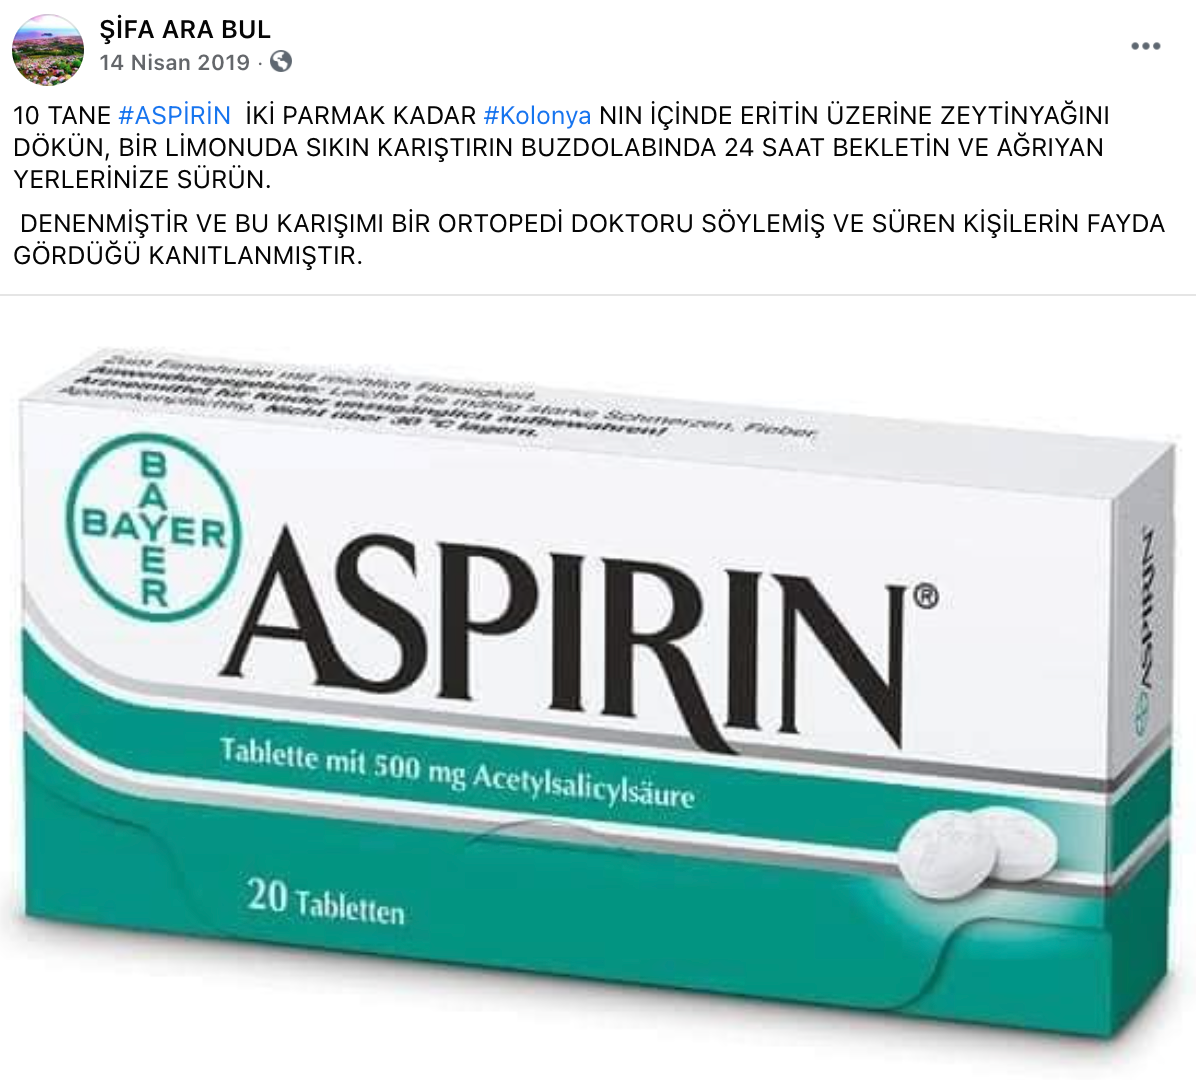 eklem agrilarina iyi geldigi iddia edilen mucizevi aspirin kuru